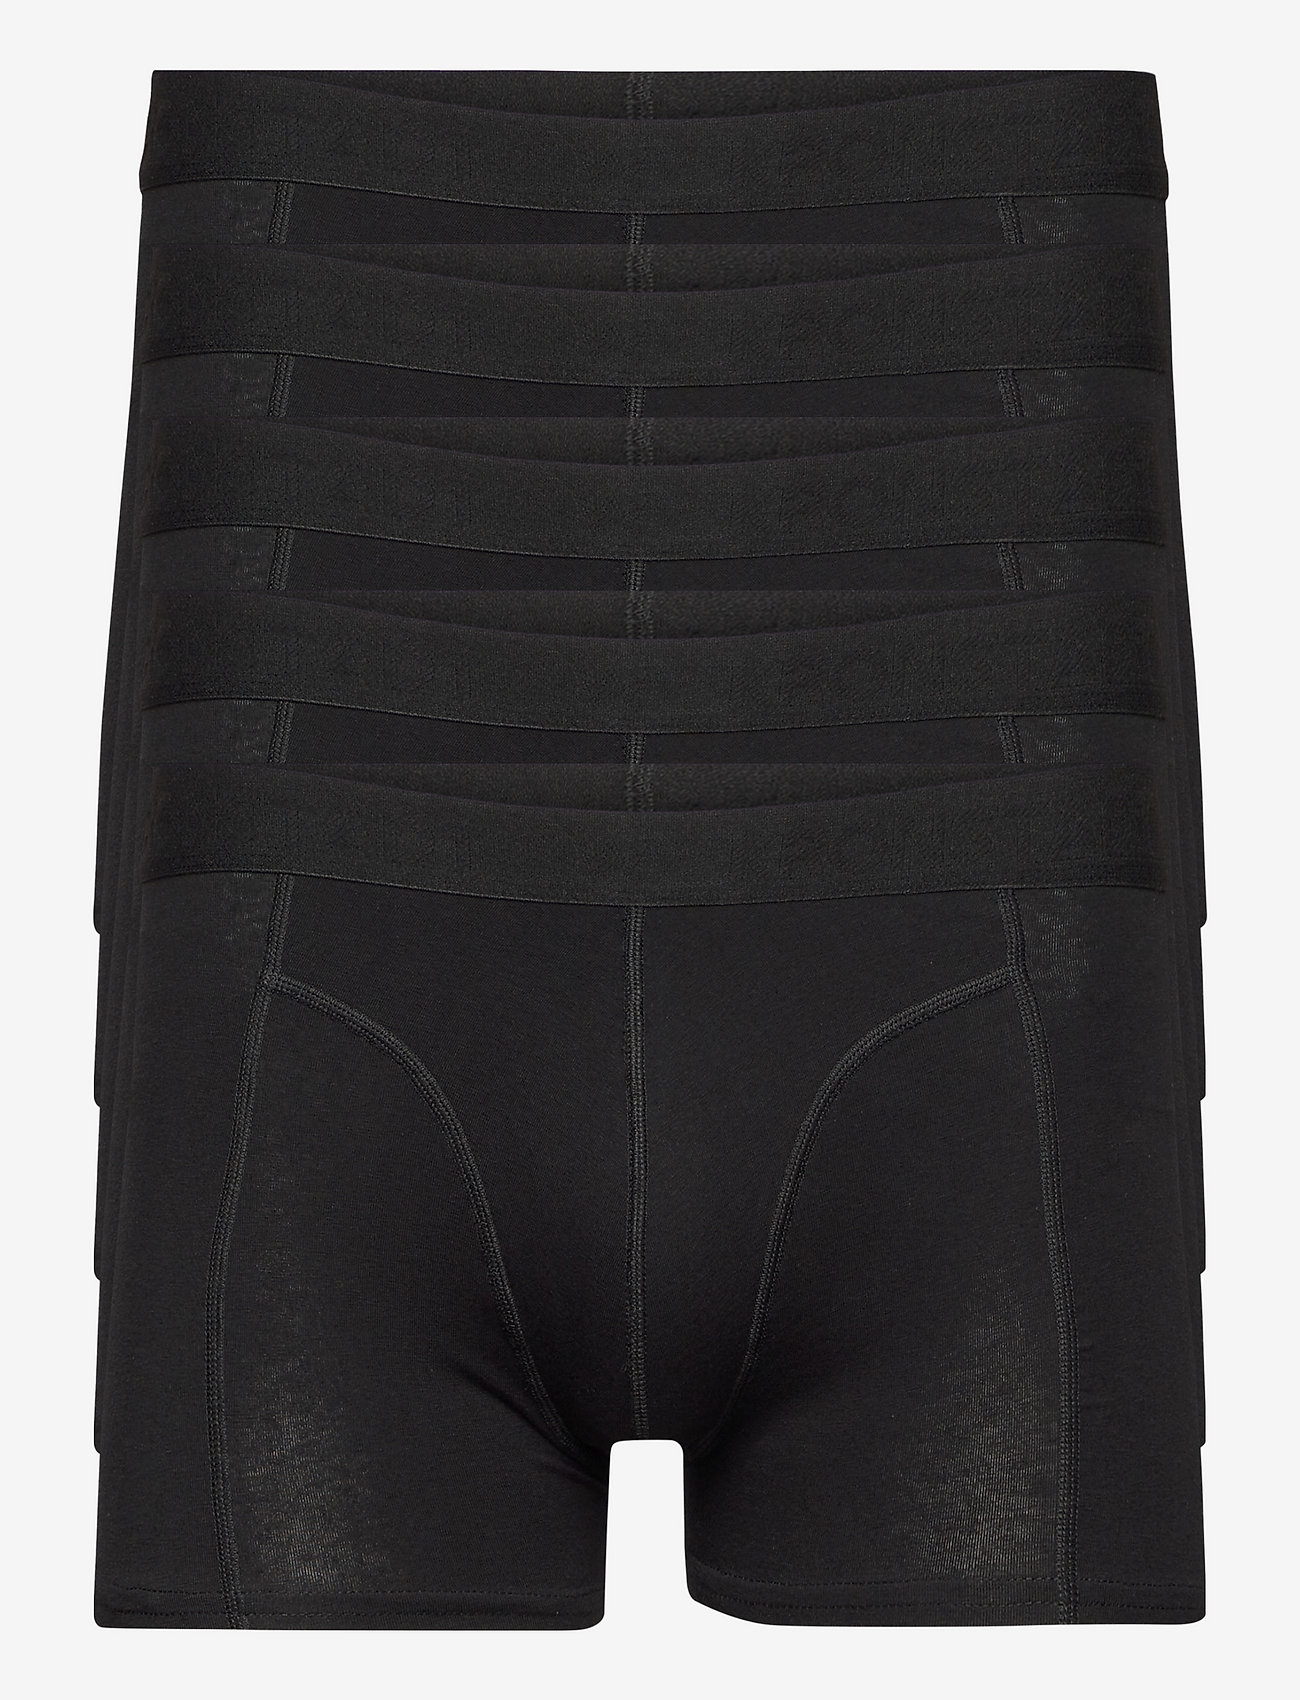 Kronstadt - Kronstadt underwear - 5-pack - nordic style - black - 0